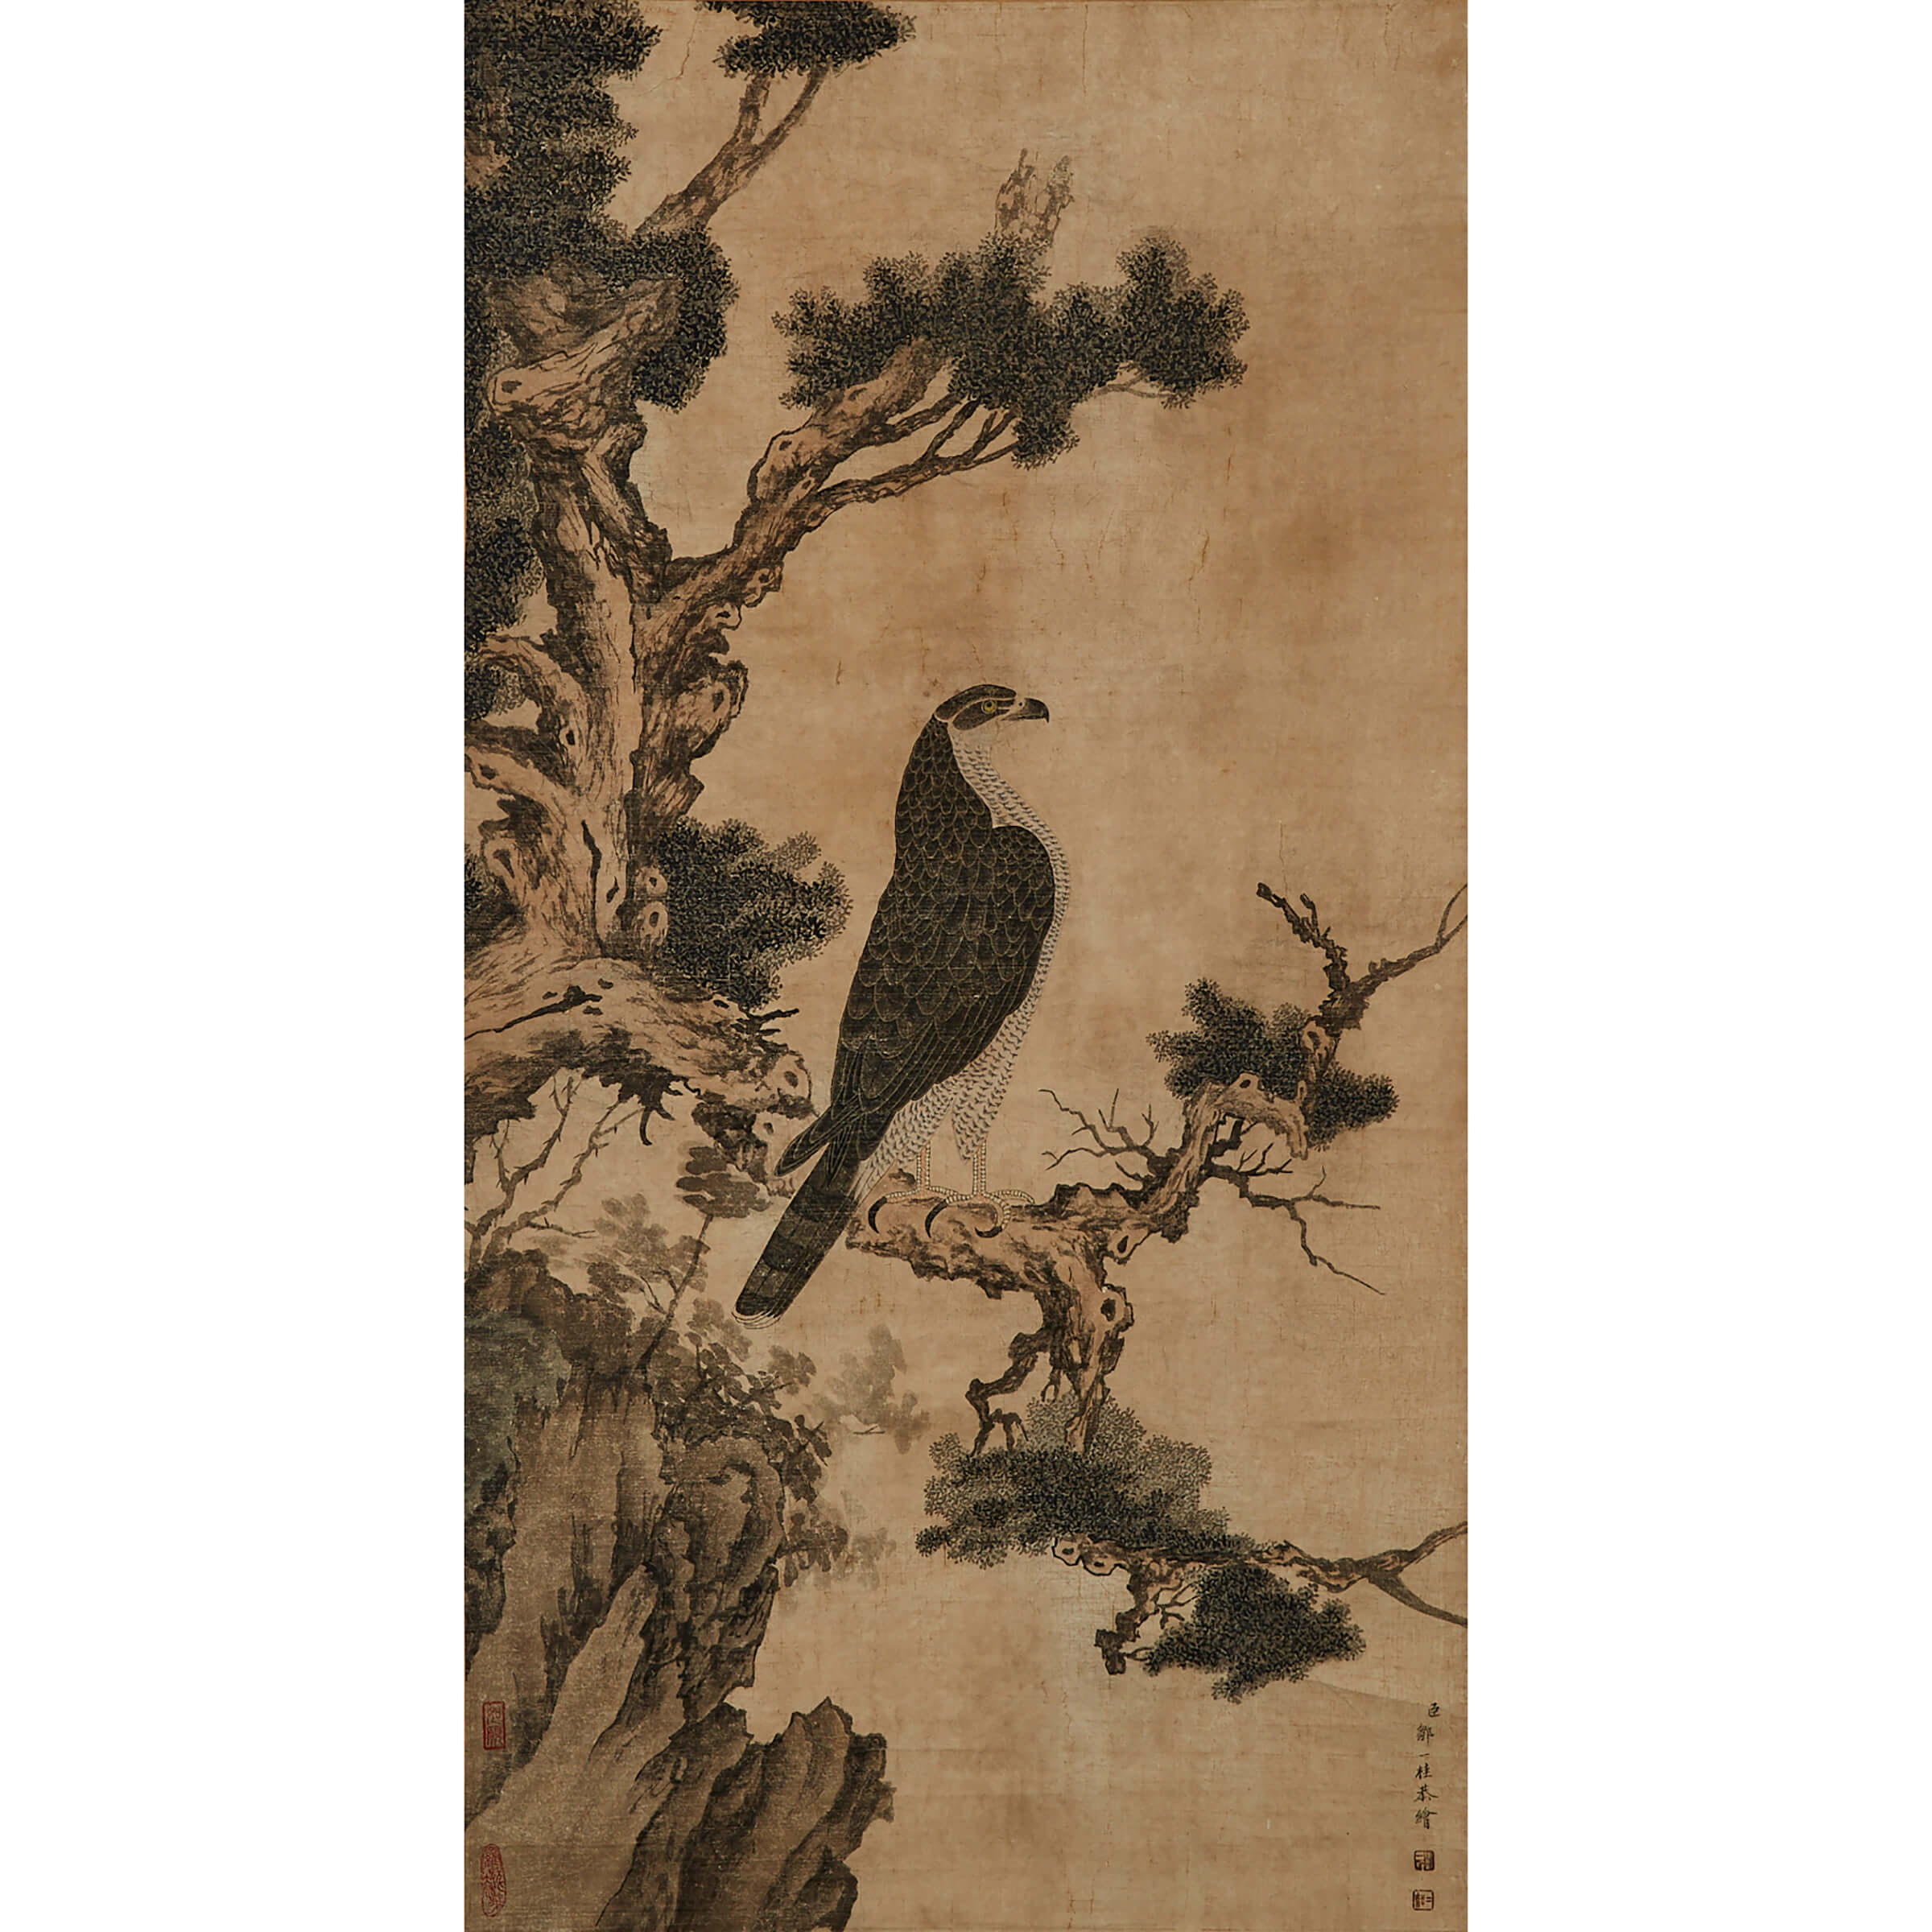 After Zou Yigui (1688-1772), Eagle